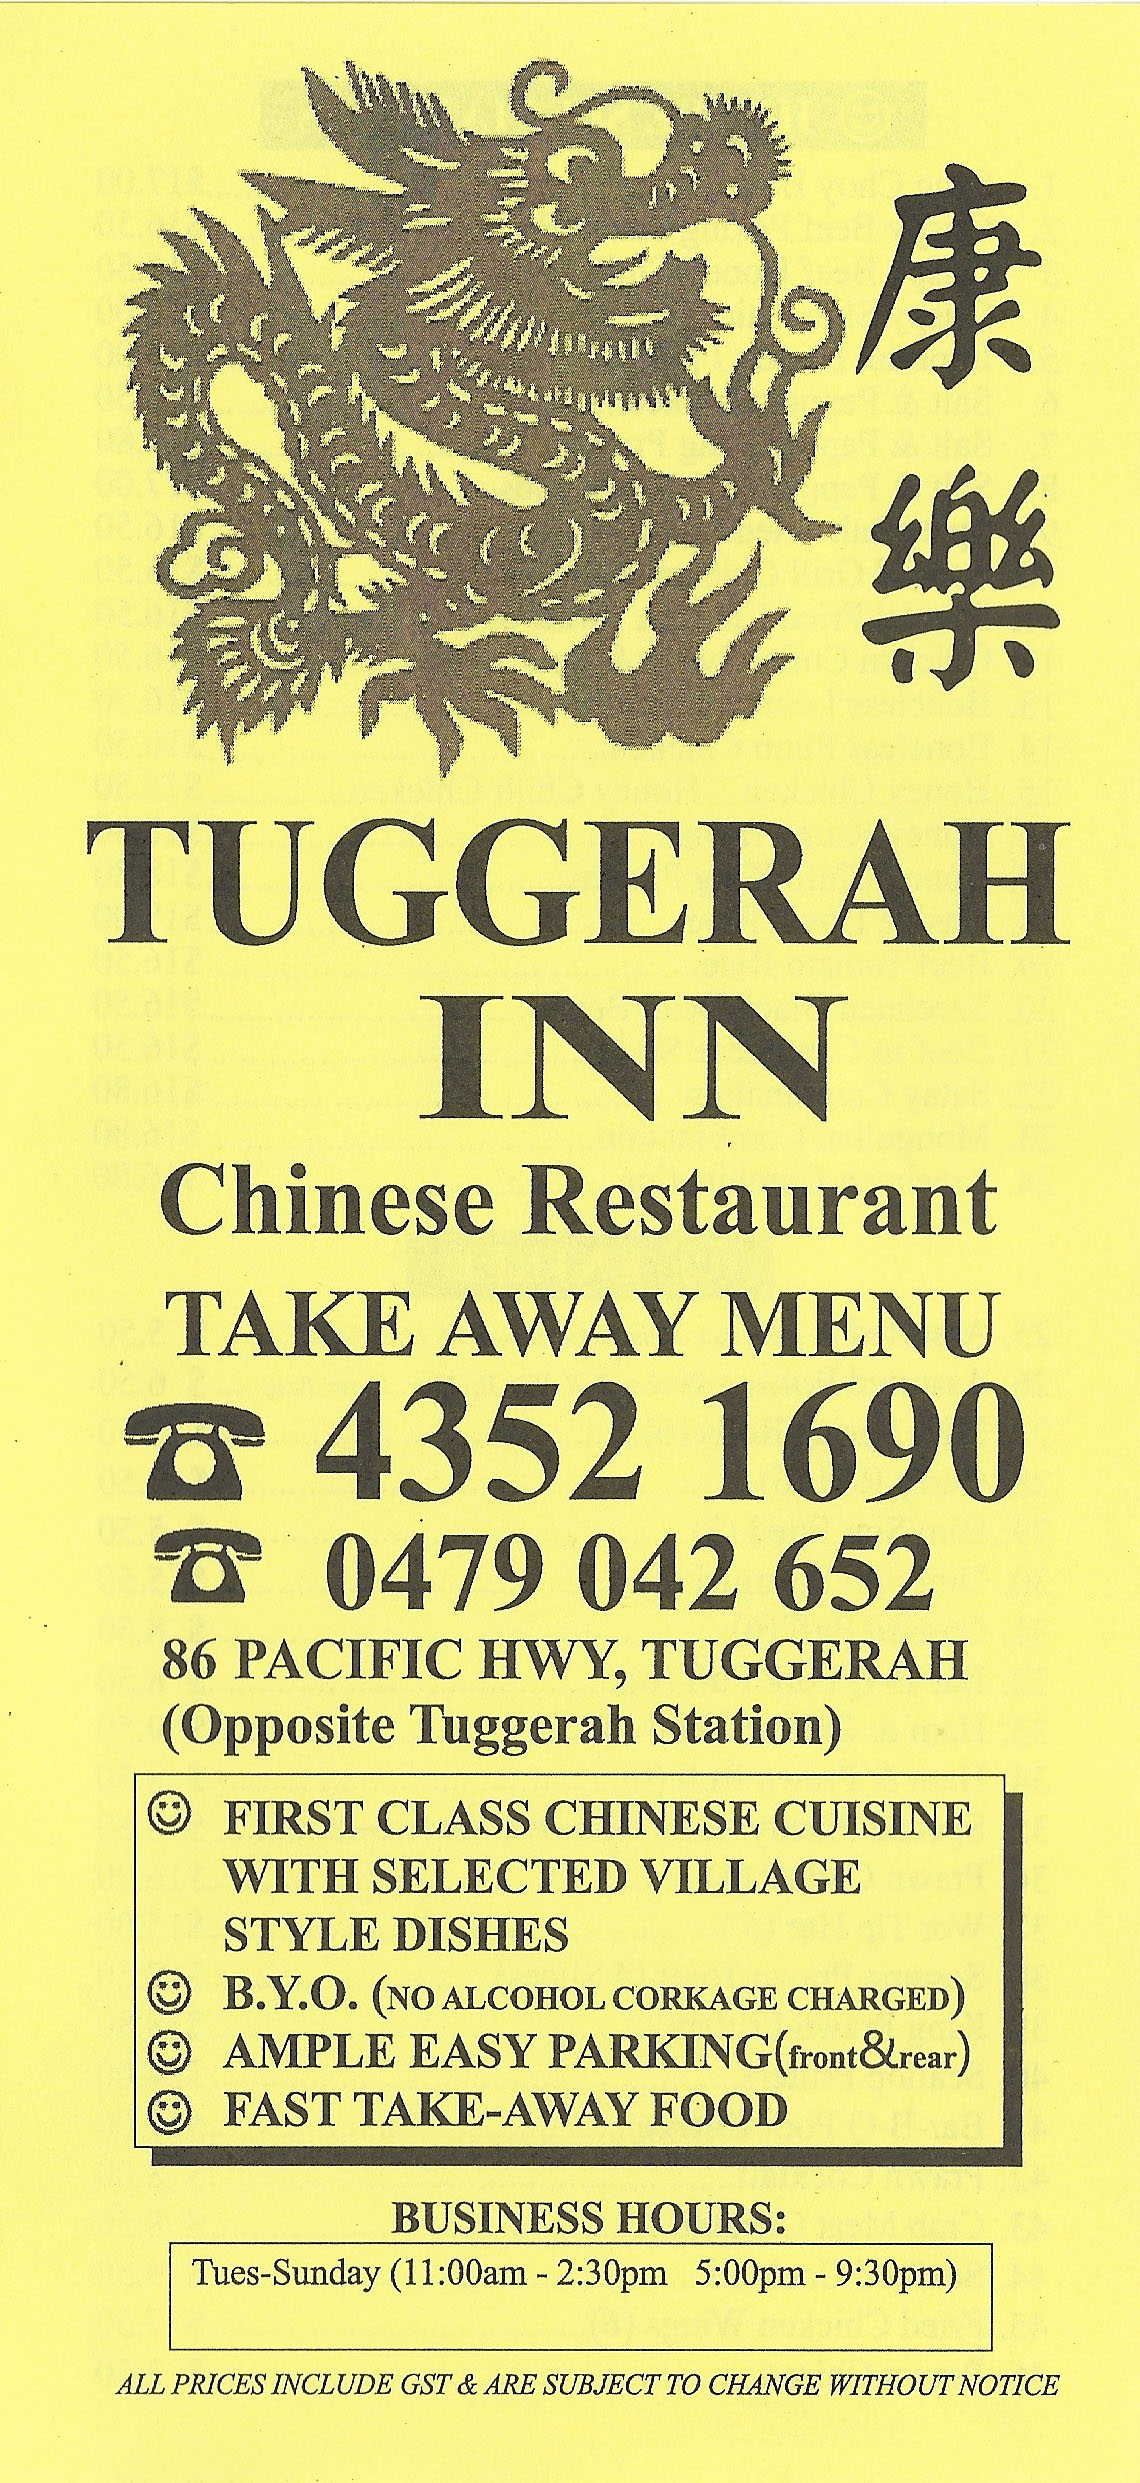 Tuggerah Inn Chinese Restaurant Tuggerah Central Coast - NSW | OBZ Online Business Zone